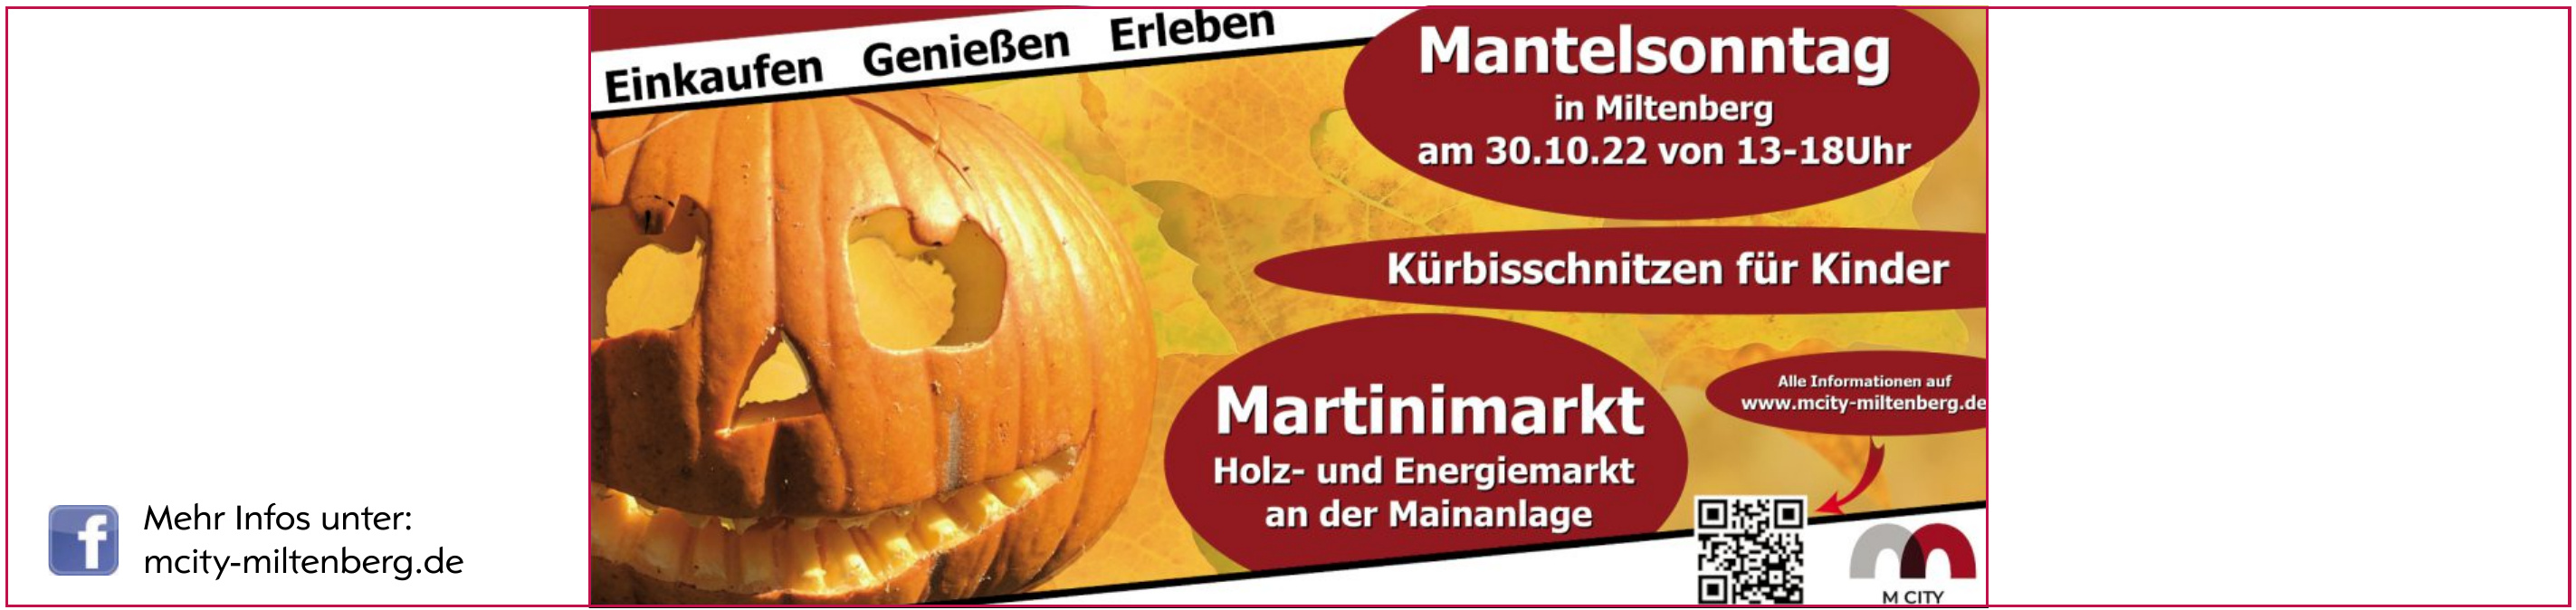 Martinimarkt - Holz- und Energiemarkt an der Mainanlage